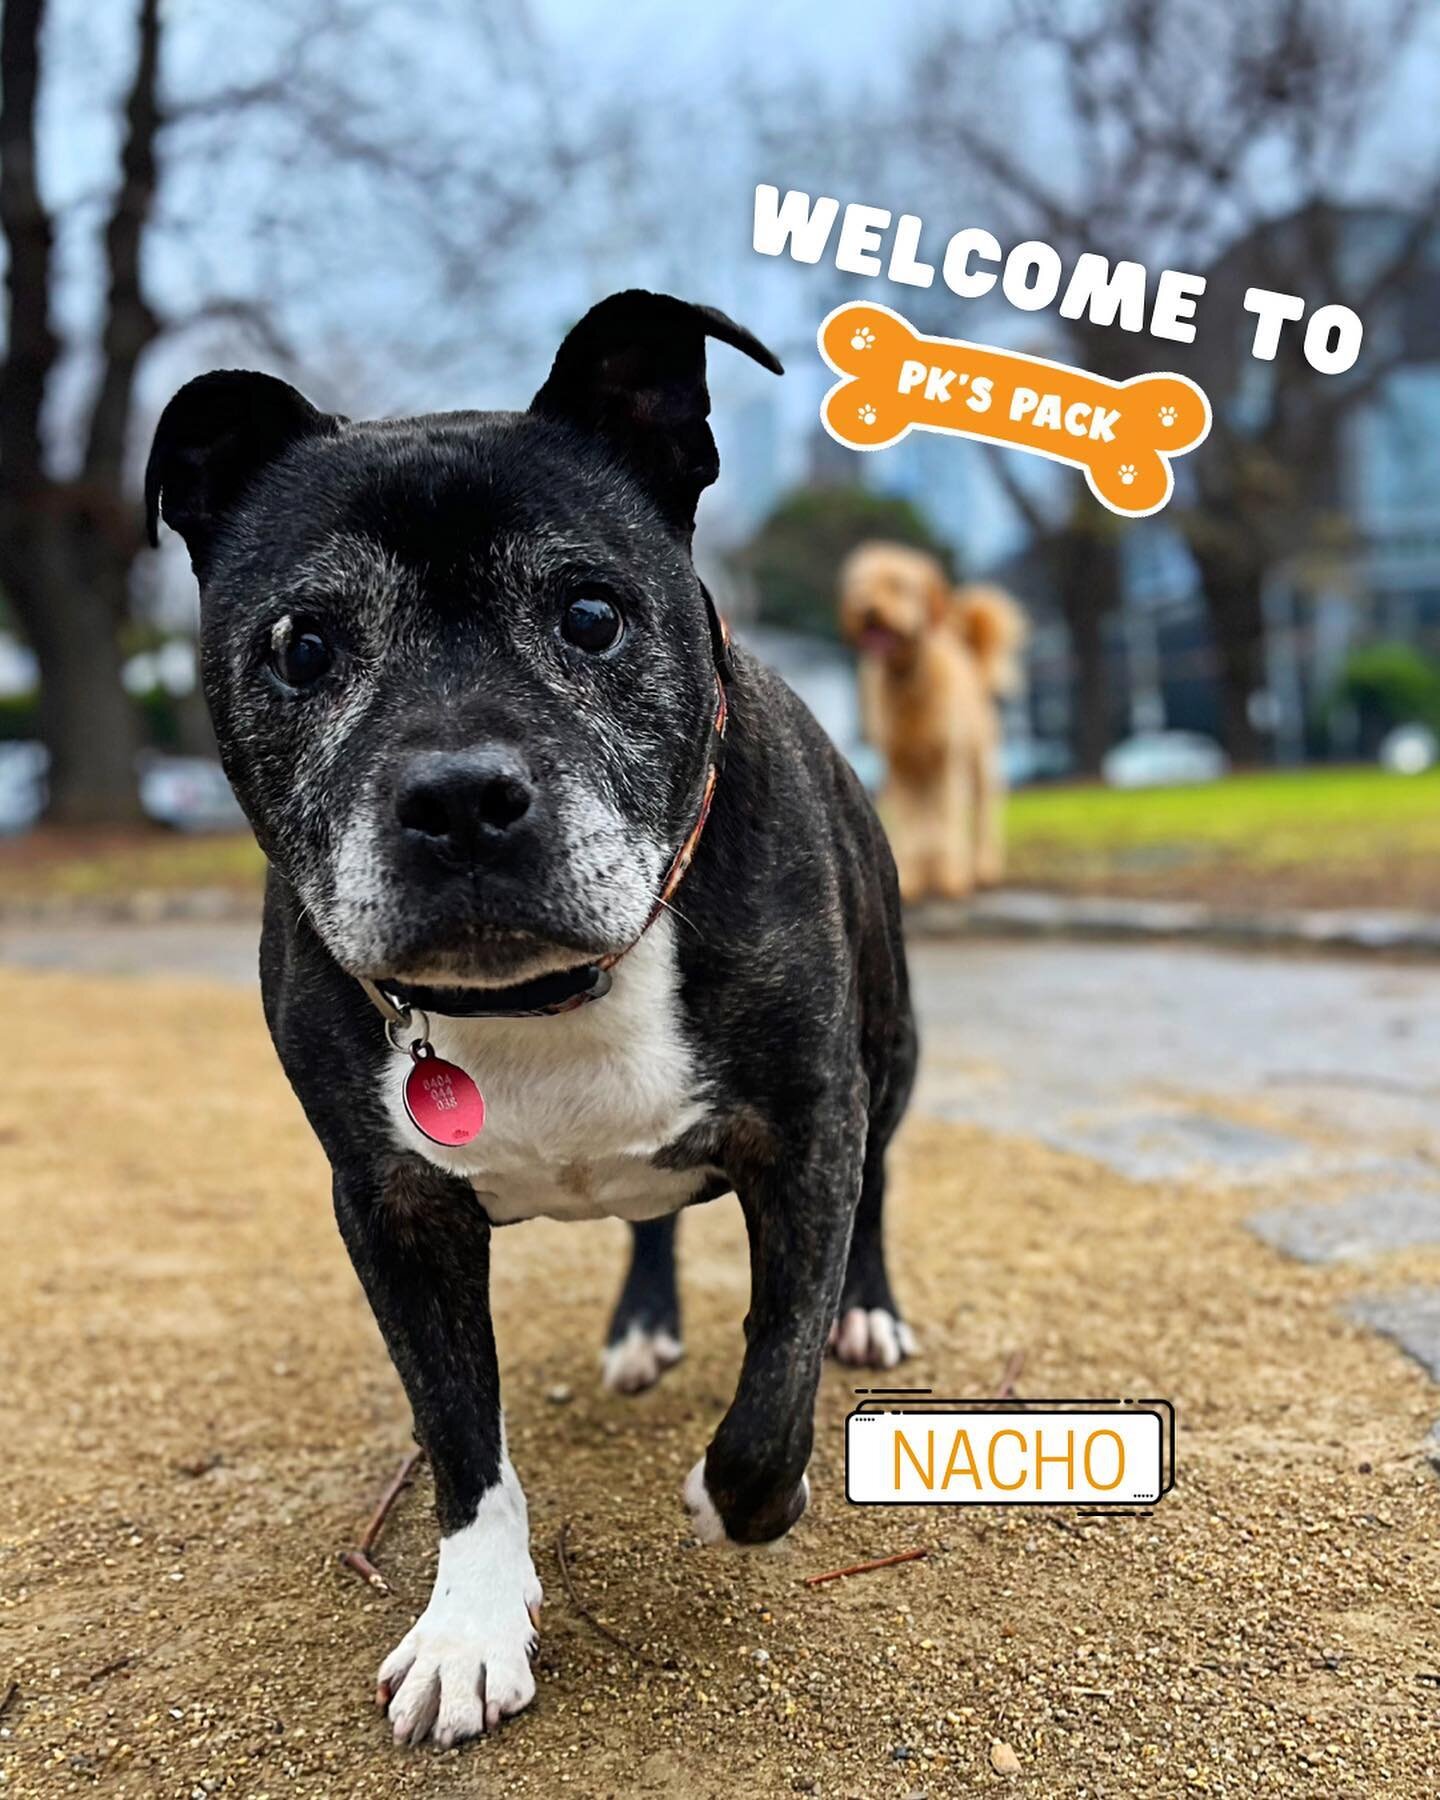 Welcome Nacho! 
.
.
.
.
#dogs #dogsofinstagram #dogsofmelbourne #staffy #staffygram #staffysofinstagram #seniordog #seniordogsofinstagram #dogphotography #dogwalkersofmelbourne #dogwalker #southmelbourne